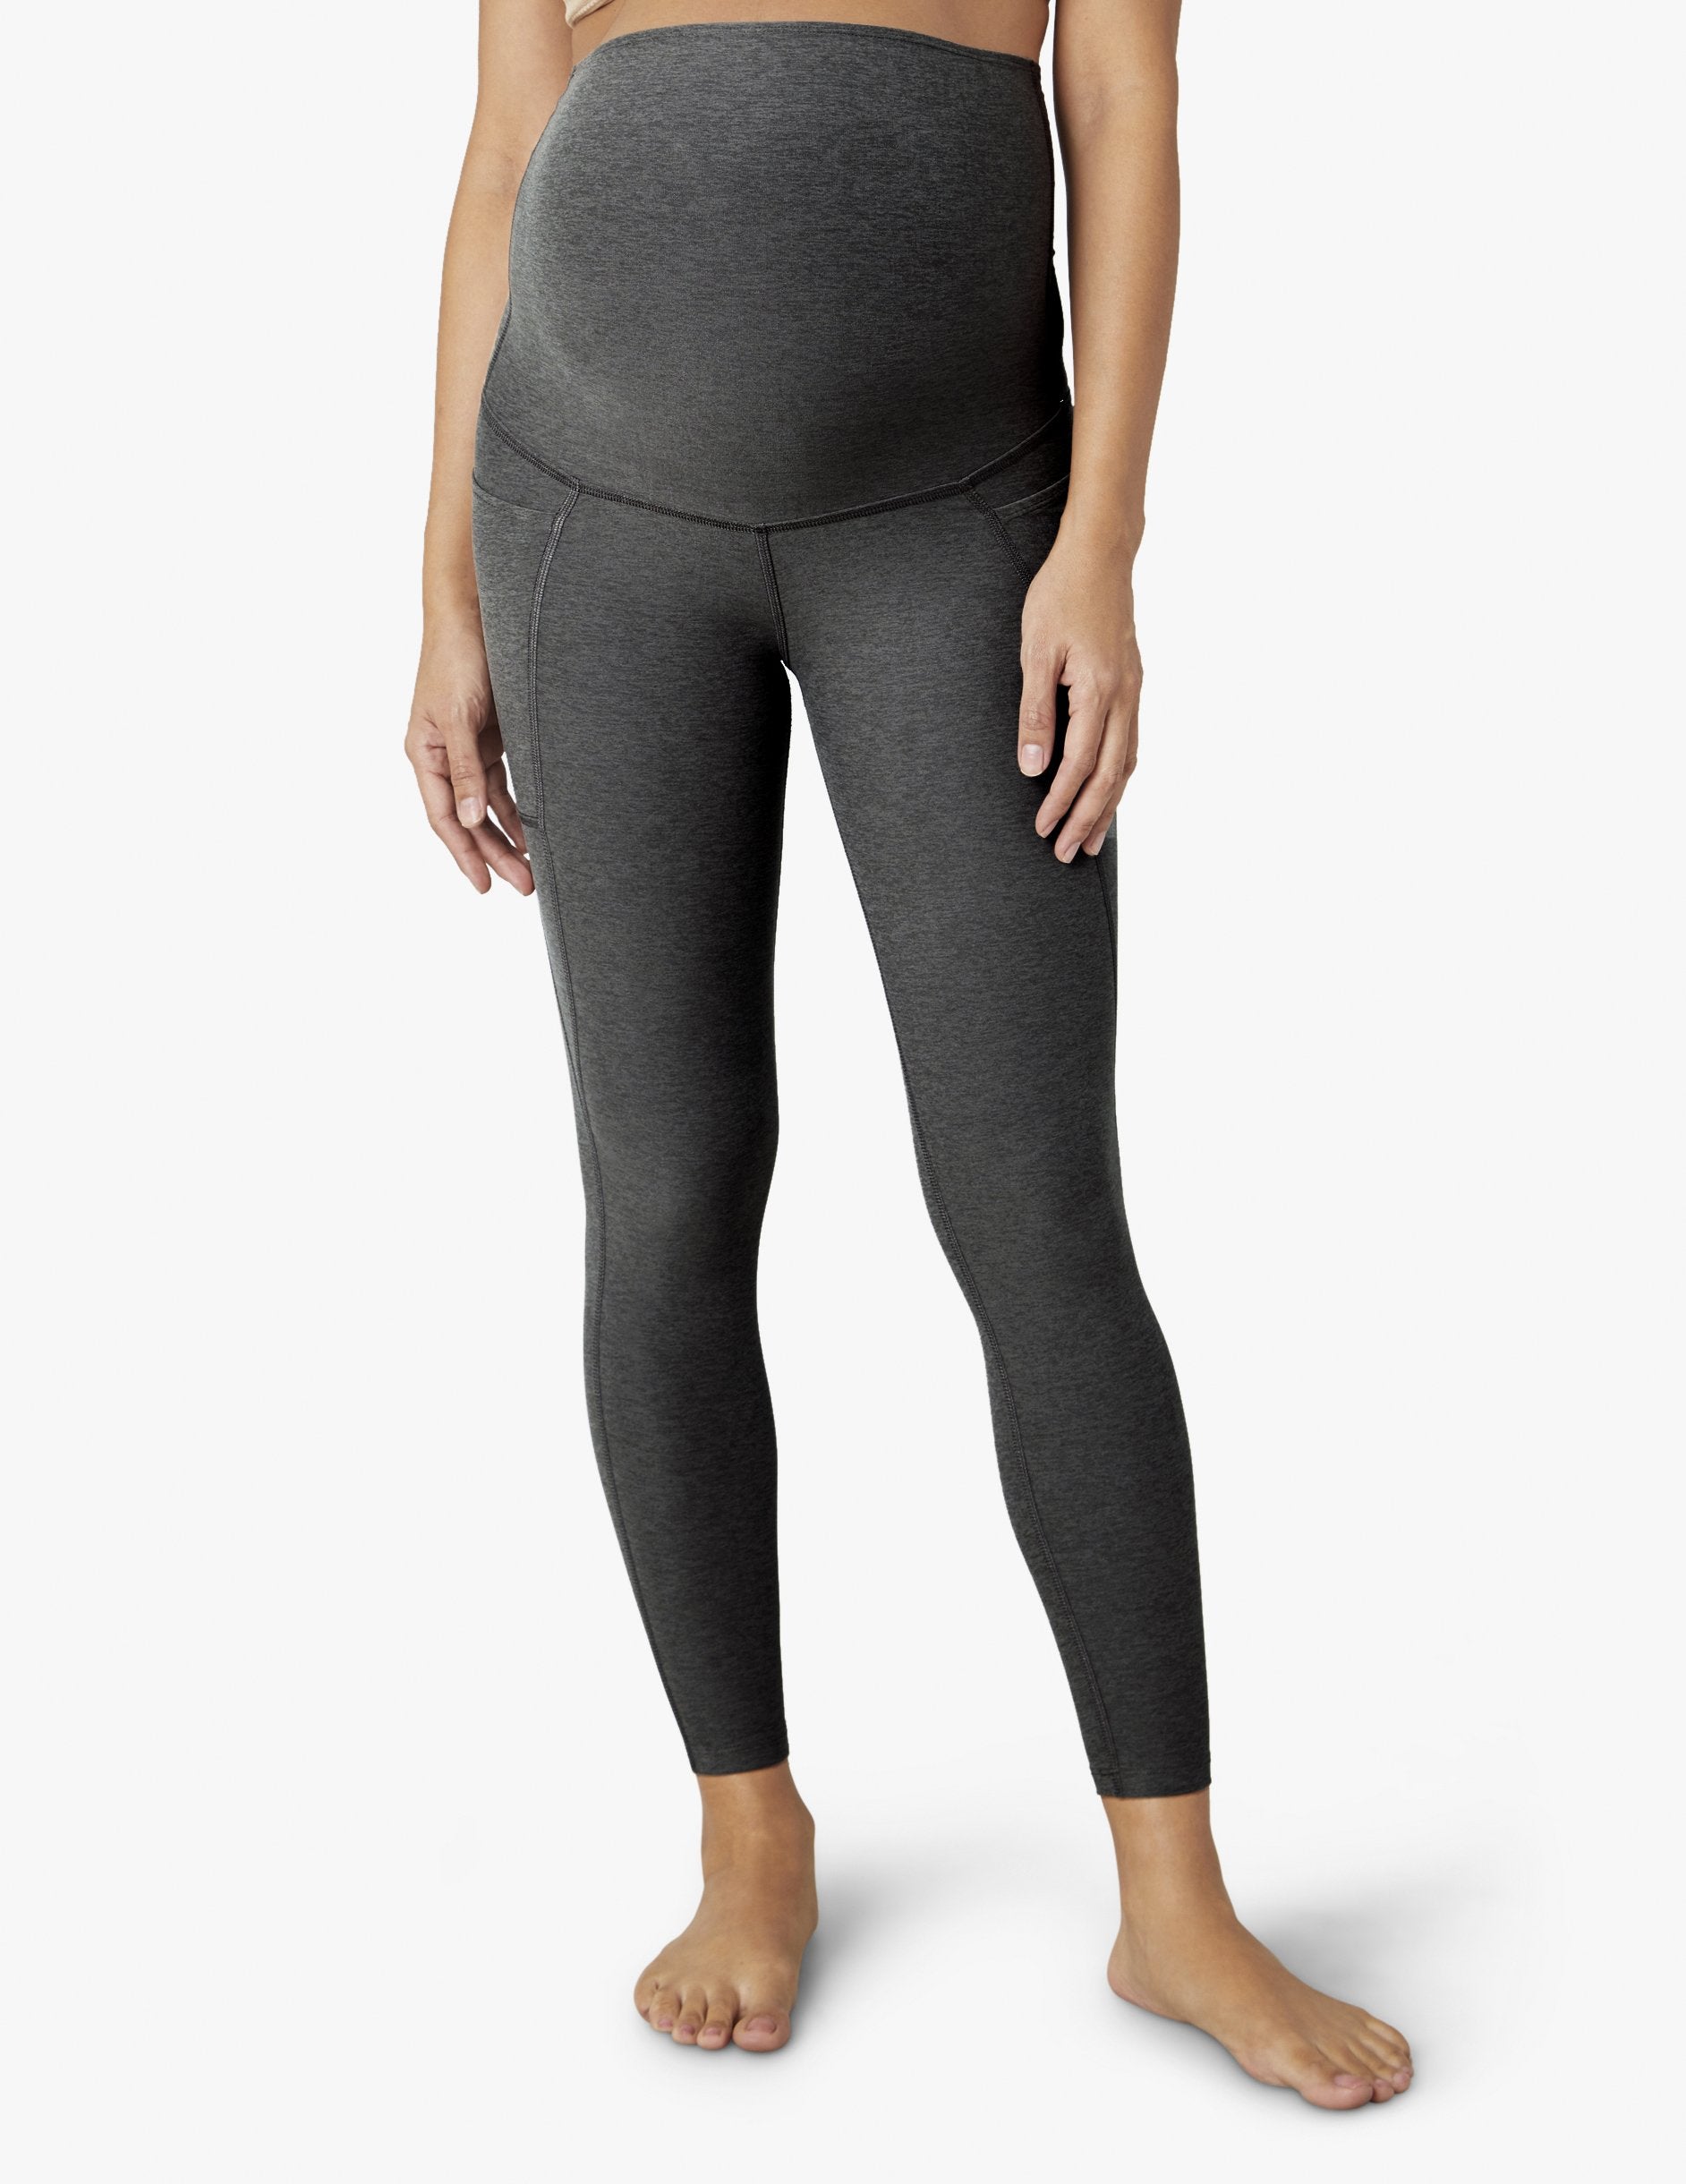 Maternity leggings - dark heather grey